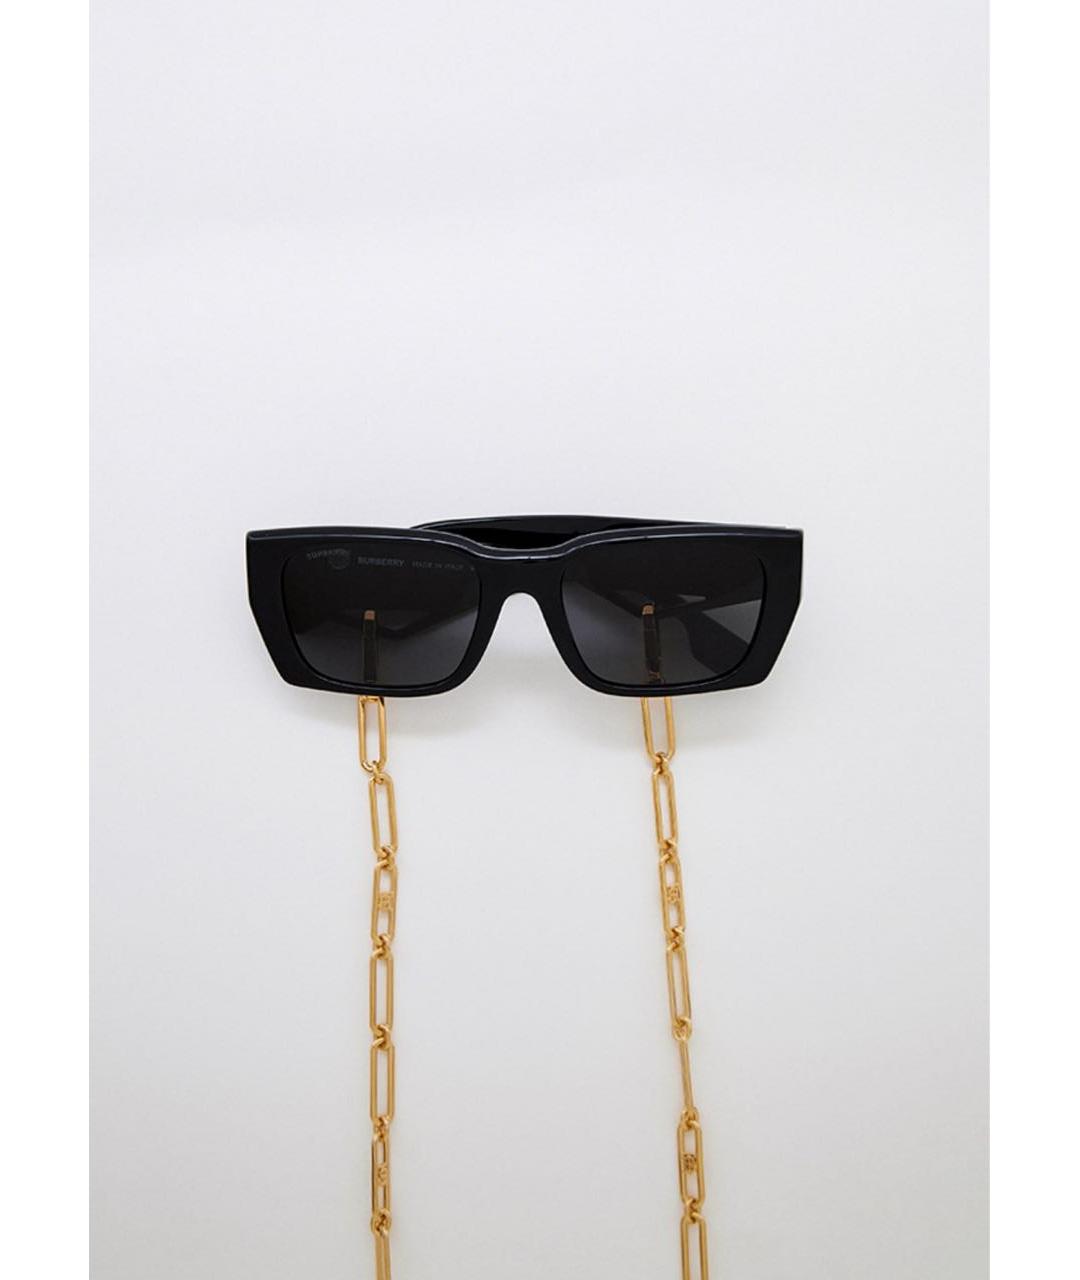 BURBERRY Черные пластиковые солнцезащитные очки, фото 9